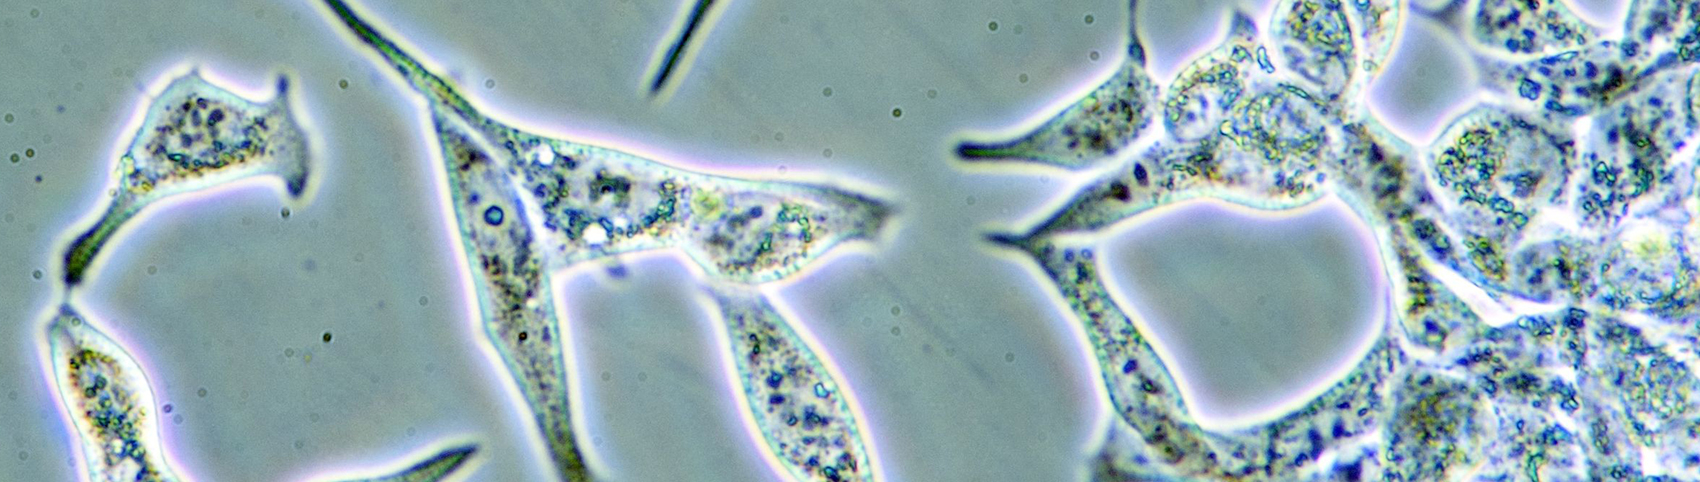 Imagen microscópica de células